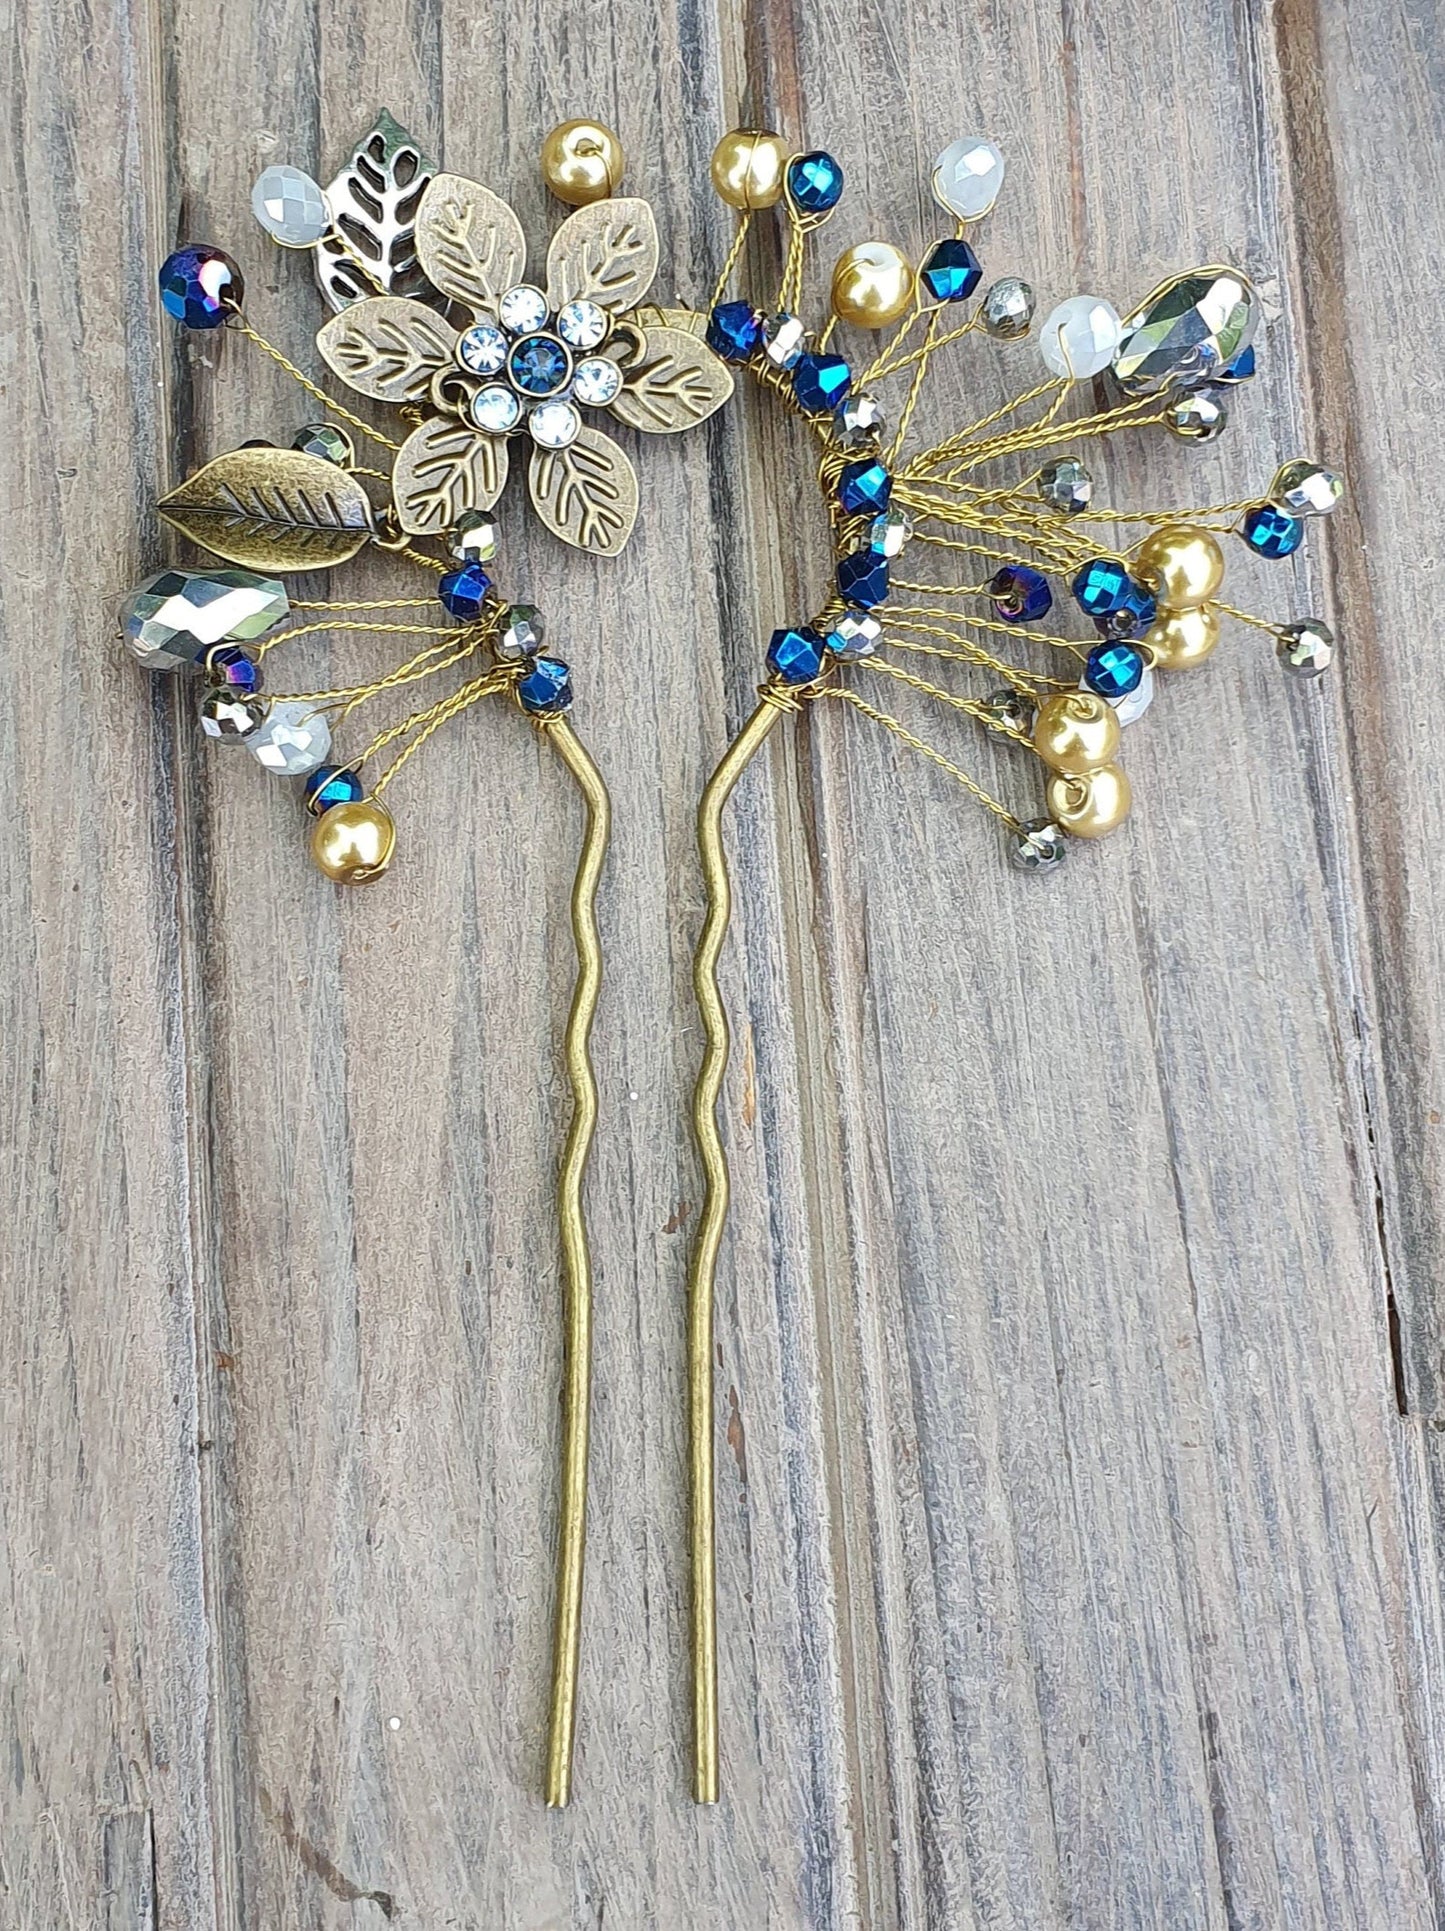 Peineta elegante hecha a mano con peineta de metal color cobre y piedras azules - peineta de novia, accesorios para el cabello